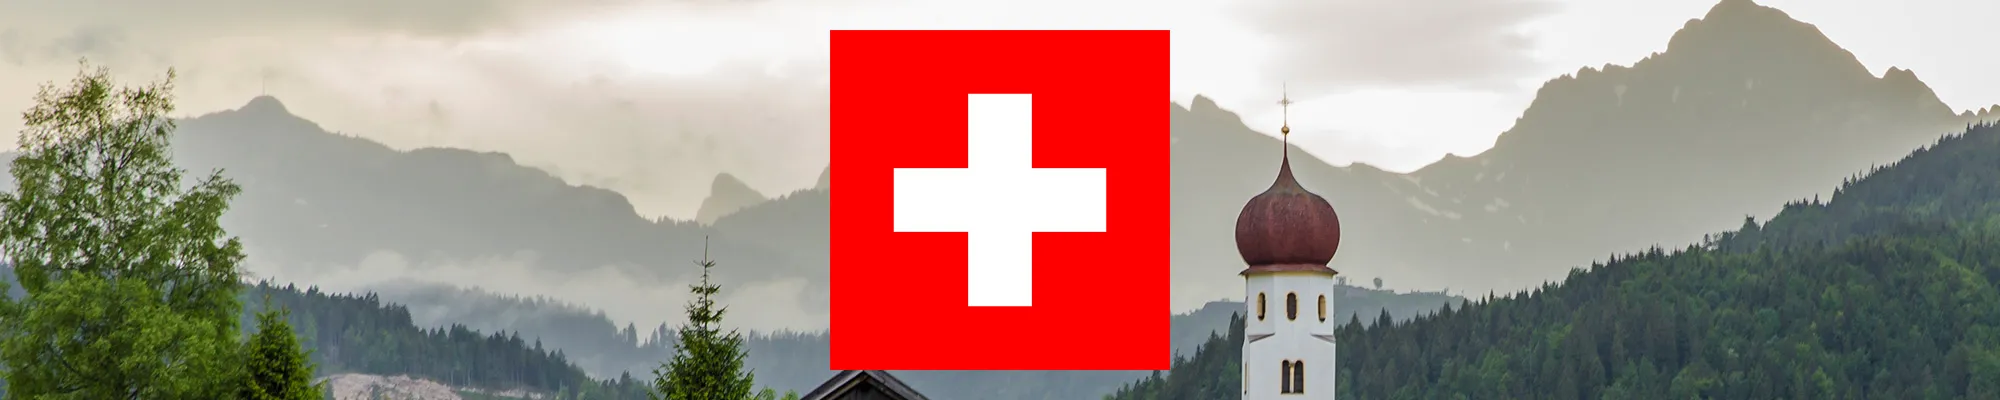 Értékesítési struktúra Svájcban | AL-KO kerti gépek